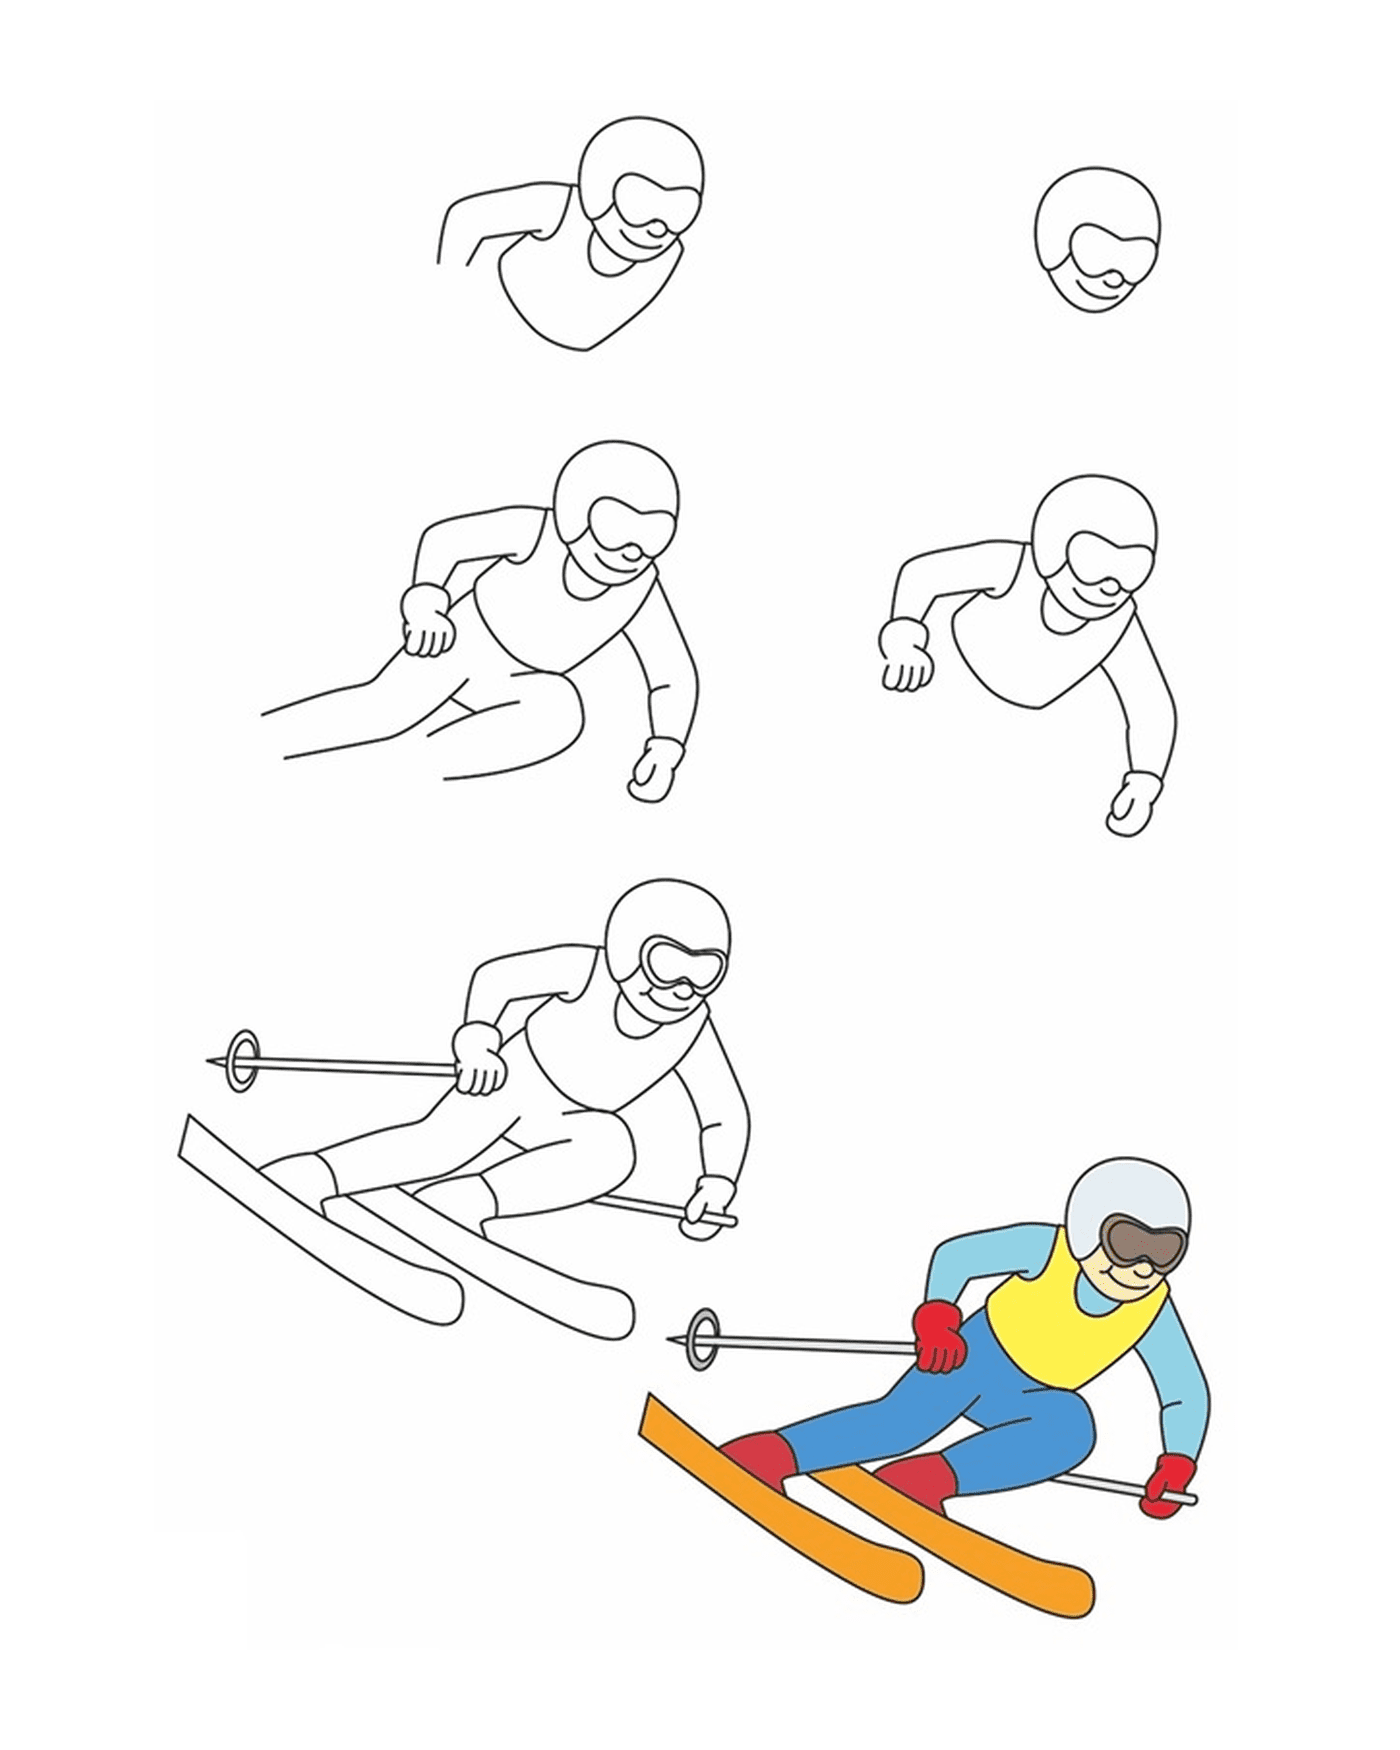  Cómo dibujar esquí de fondo 